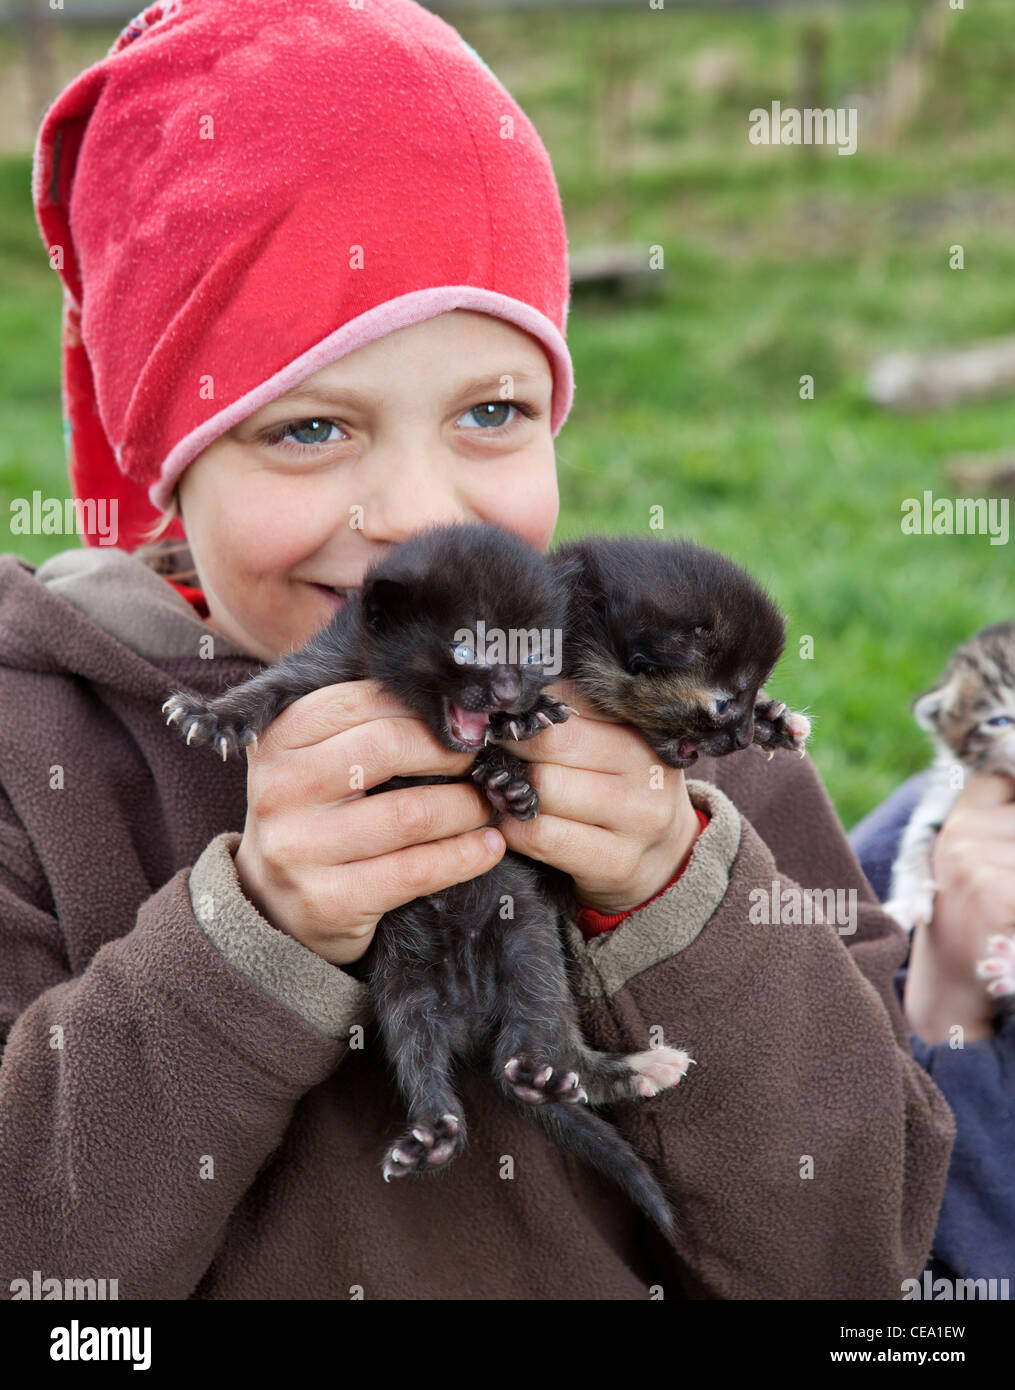 Garçon avec de jeunes chatons sur ferme, Eyjafjordur, Islande Banque D'Images